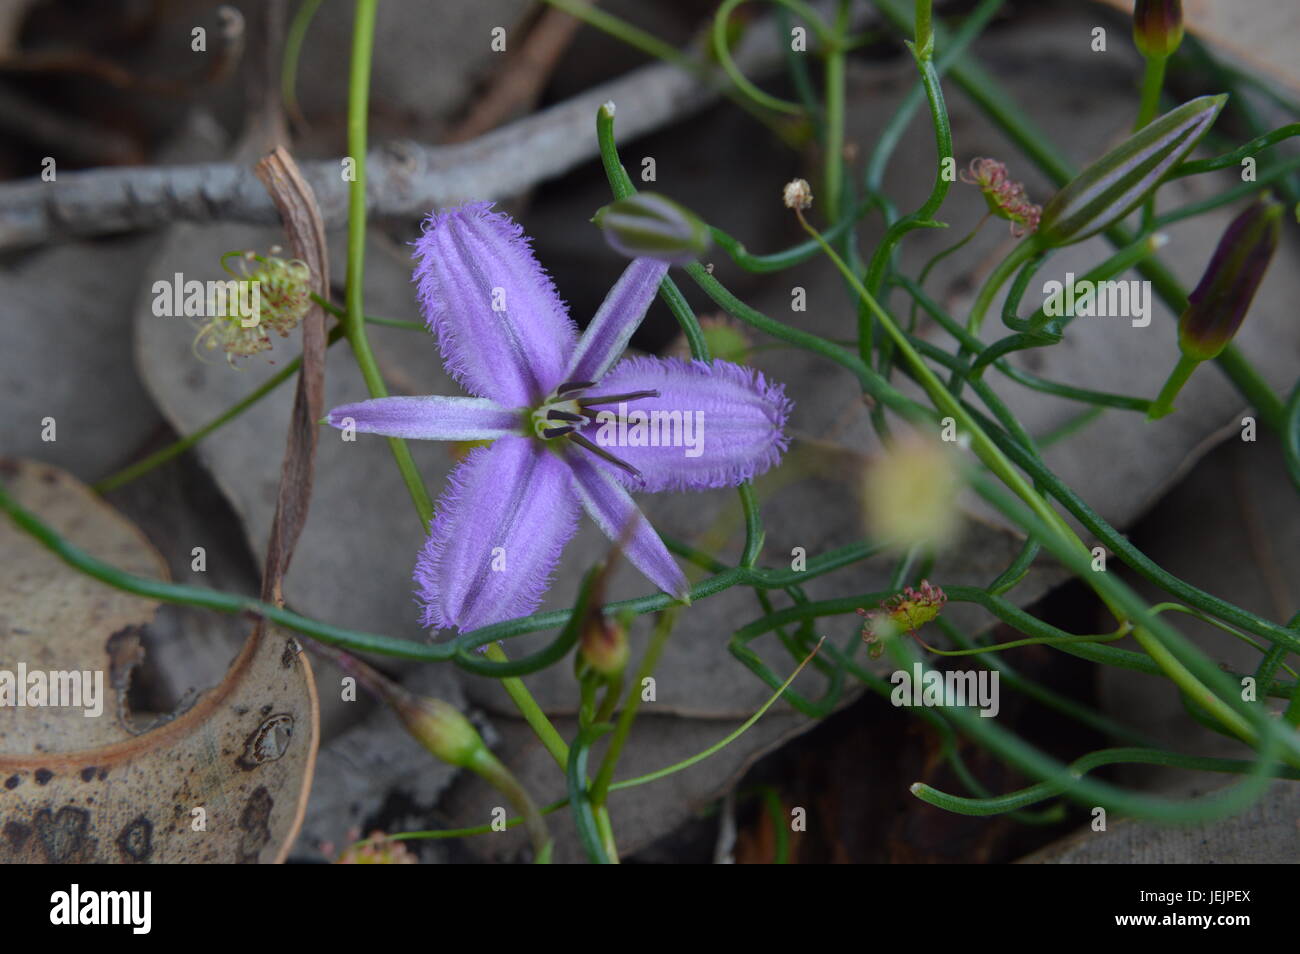 Small purple native WA flower Stock Photo